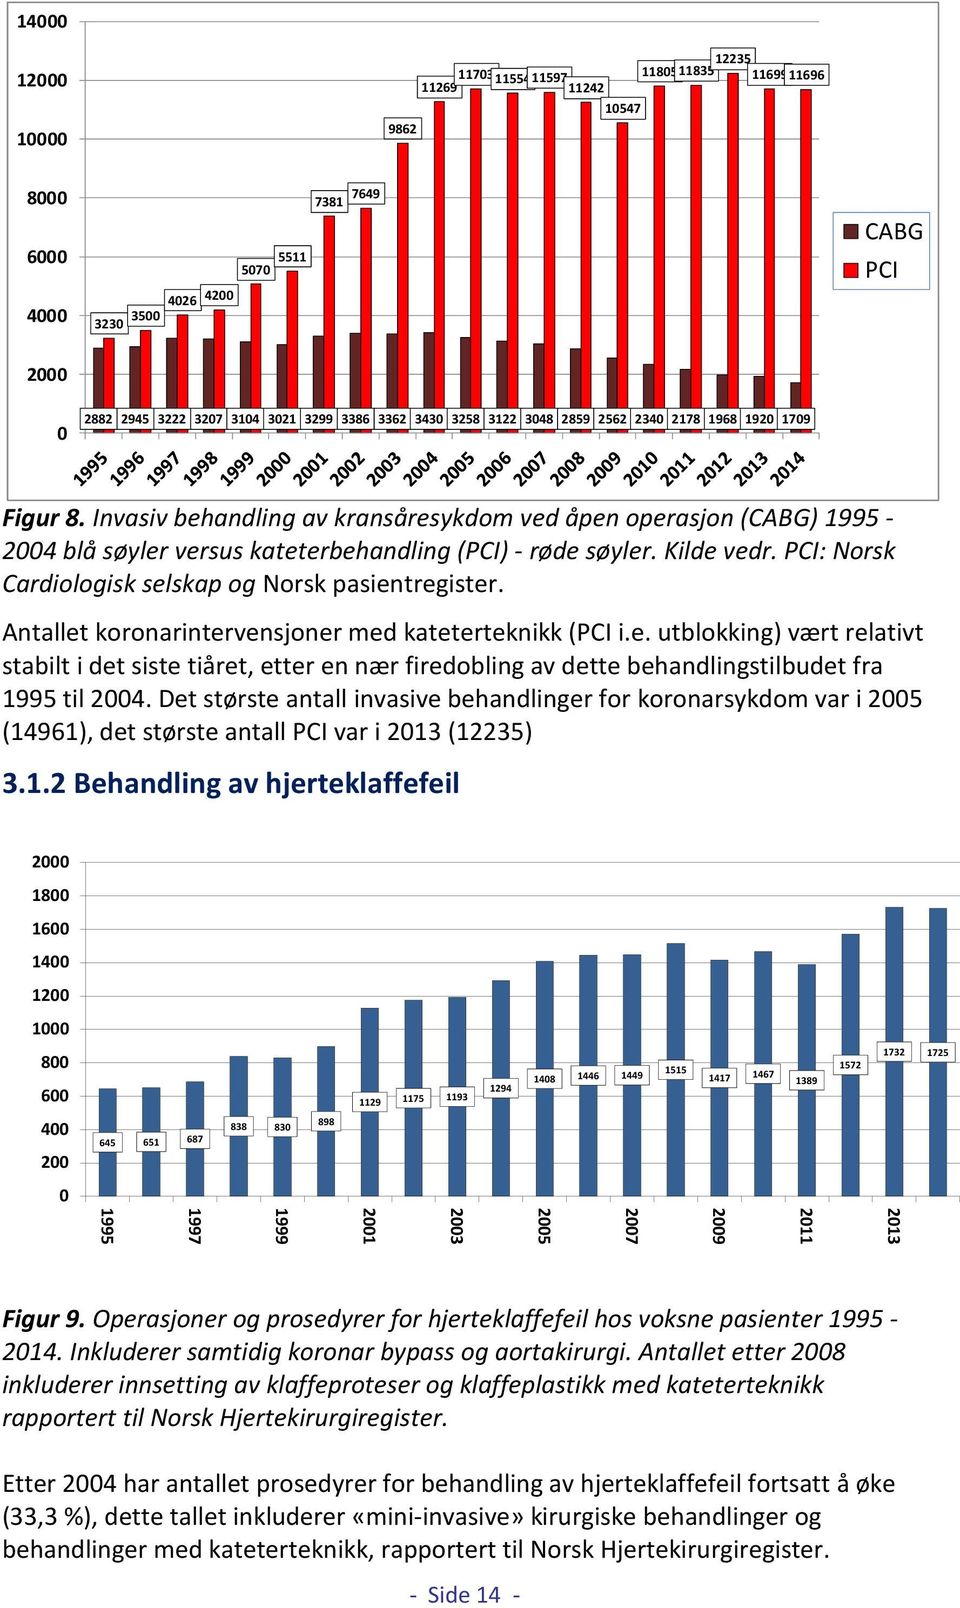 Kilde vedr. PCI: Norsk Cardiologisk selskap og Norsk pasientregister. Antallet koronarintervensjoner med kateterteknikk (PCI i.e. utblokking) vært relativt stabilt i det siste tiåret, etter en nær firedobling av dette behandlingstilbudet fra 1995 til 2004.